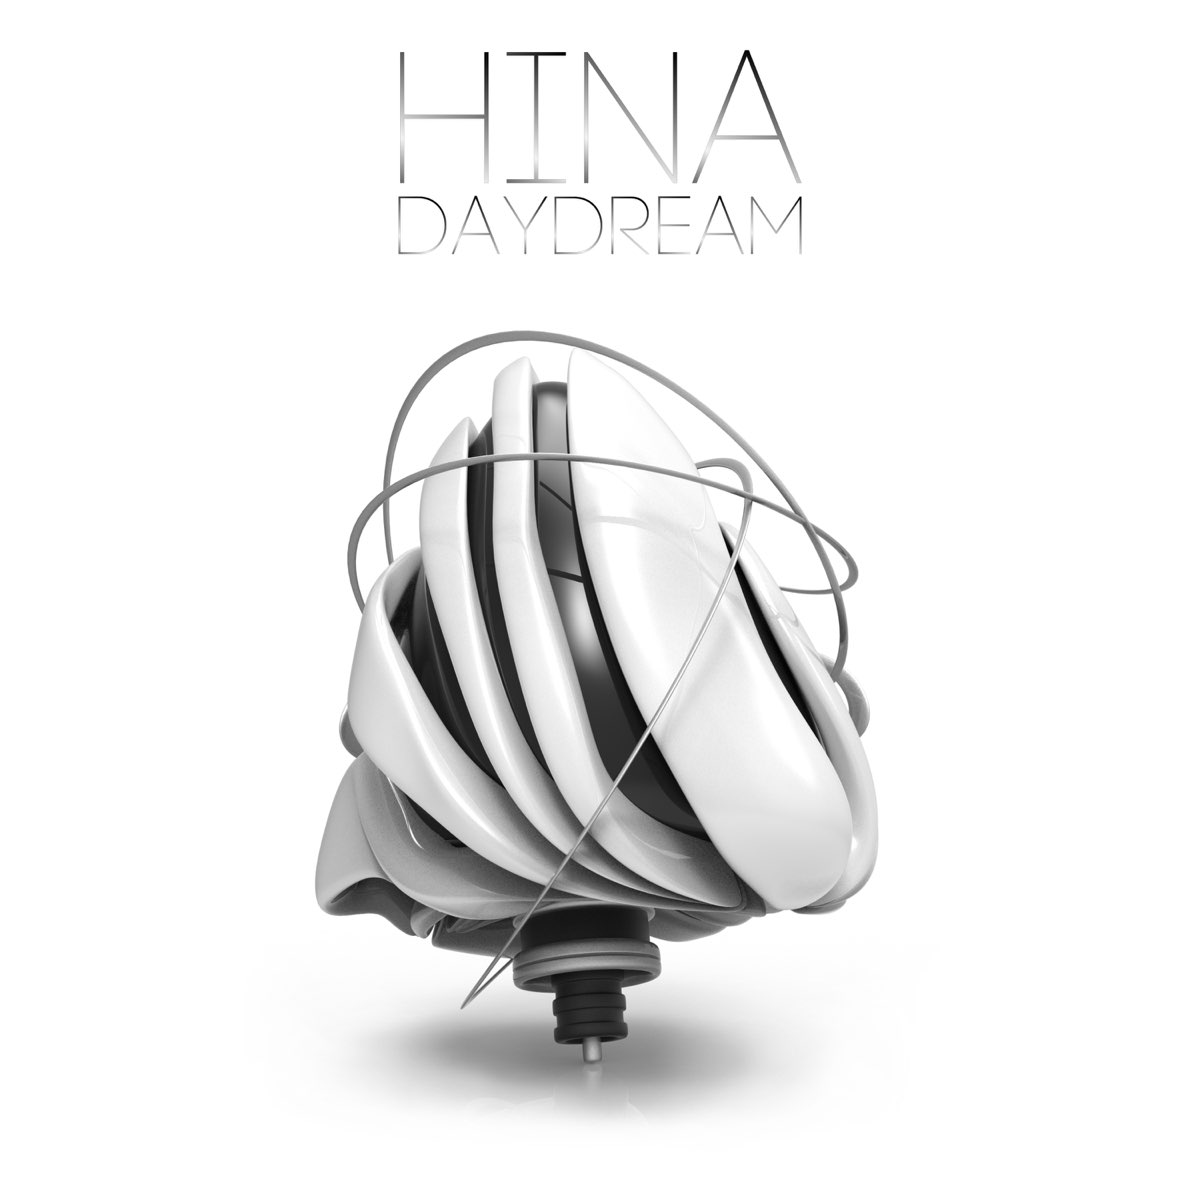 Hina day dream